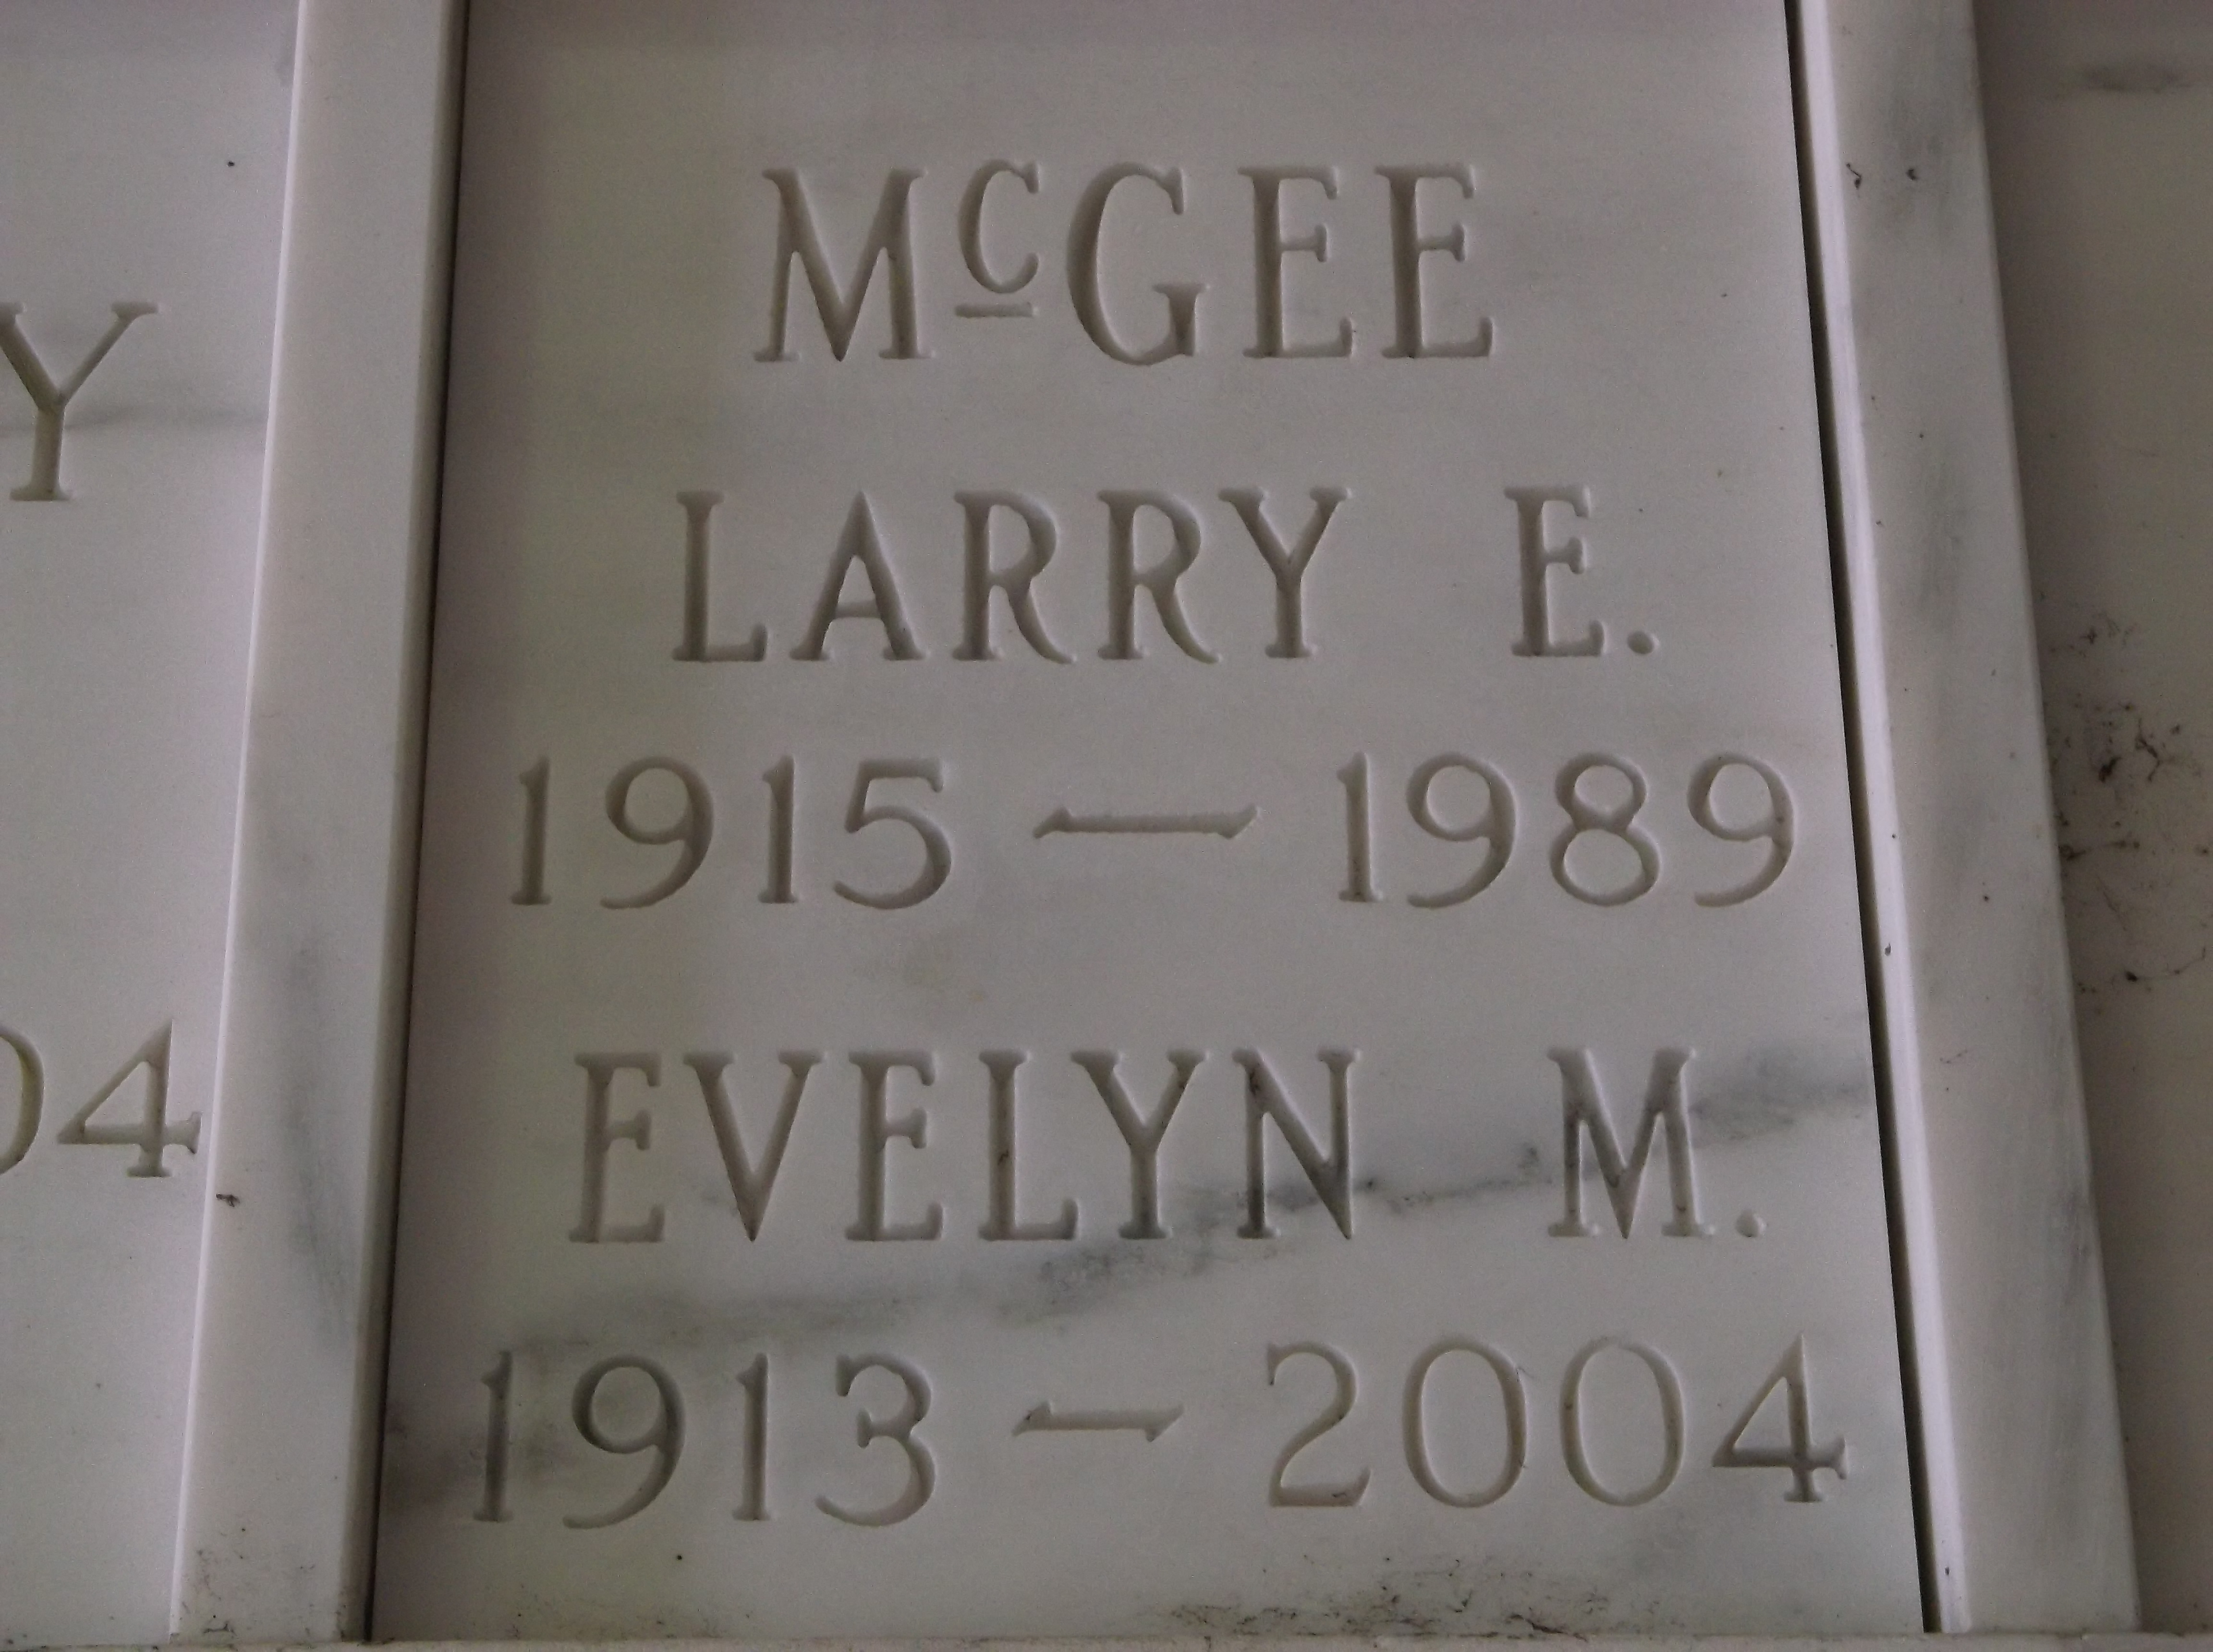 Larry E McGee